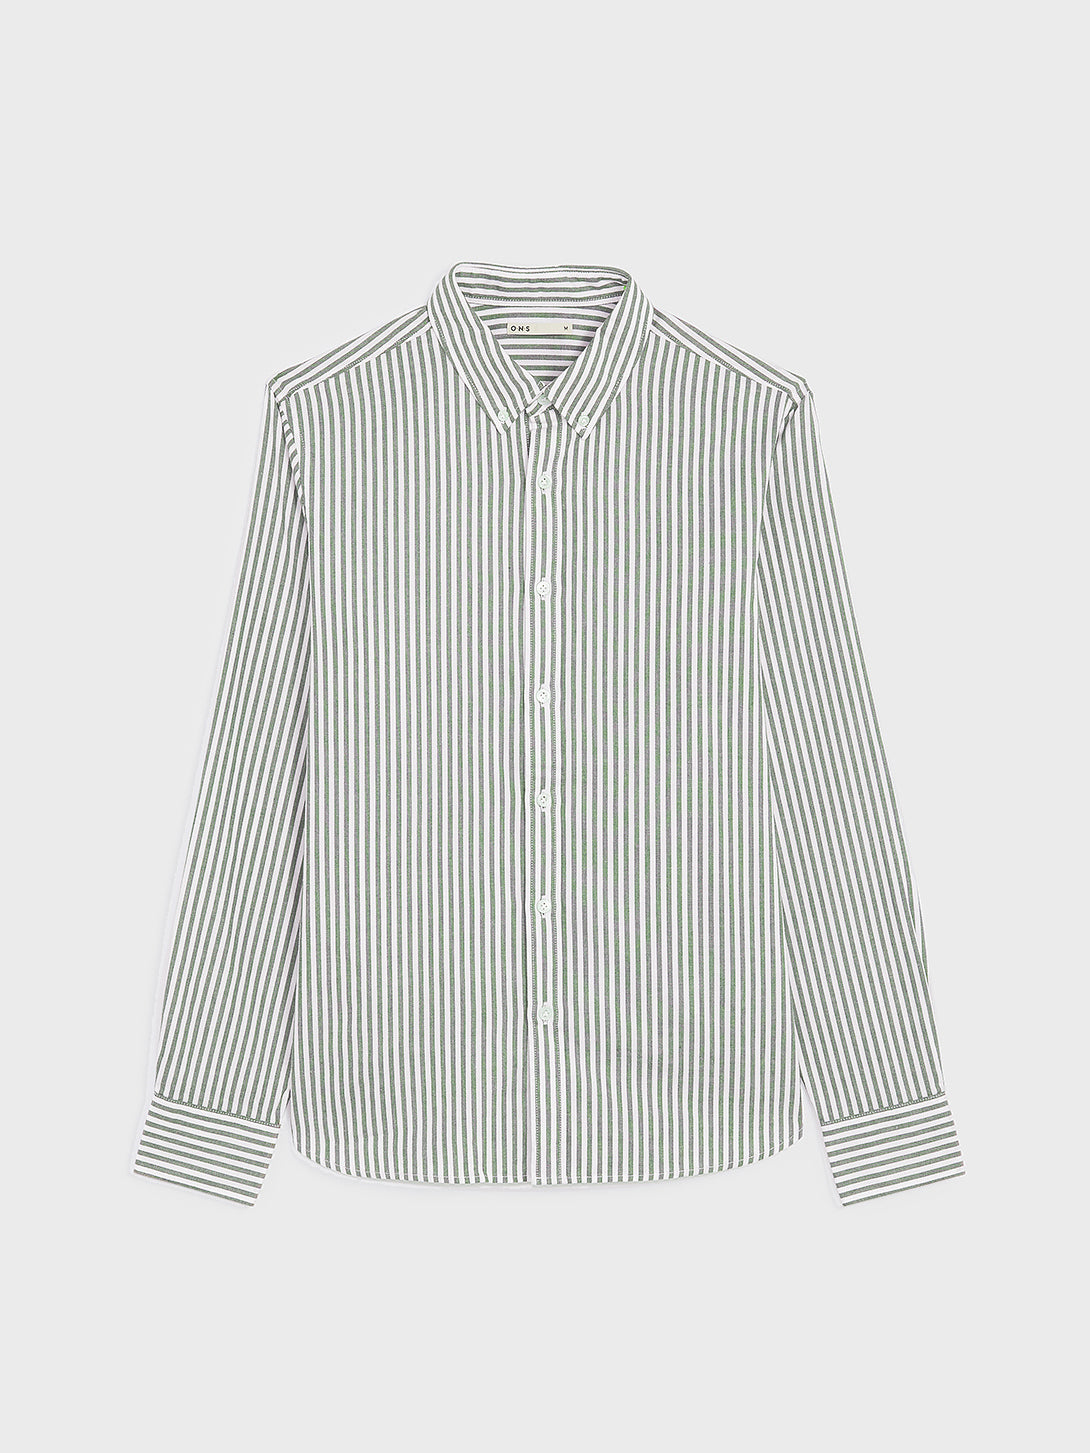 Fulton Stripe Oxford Shirt